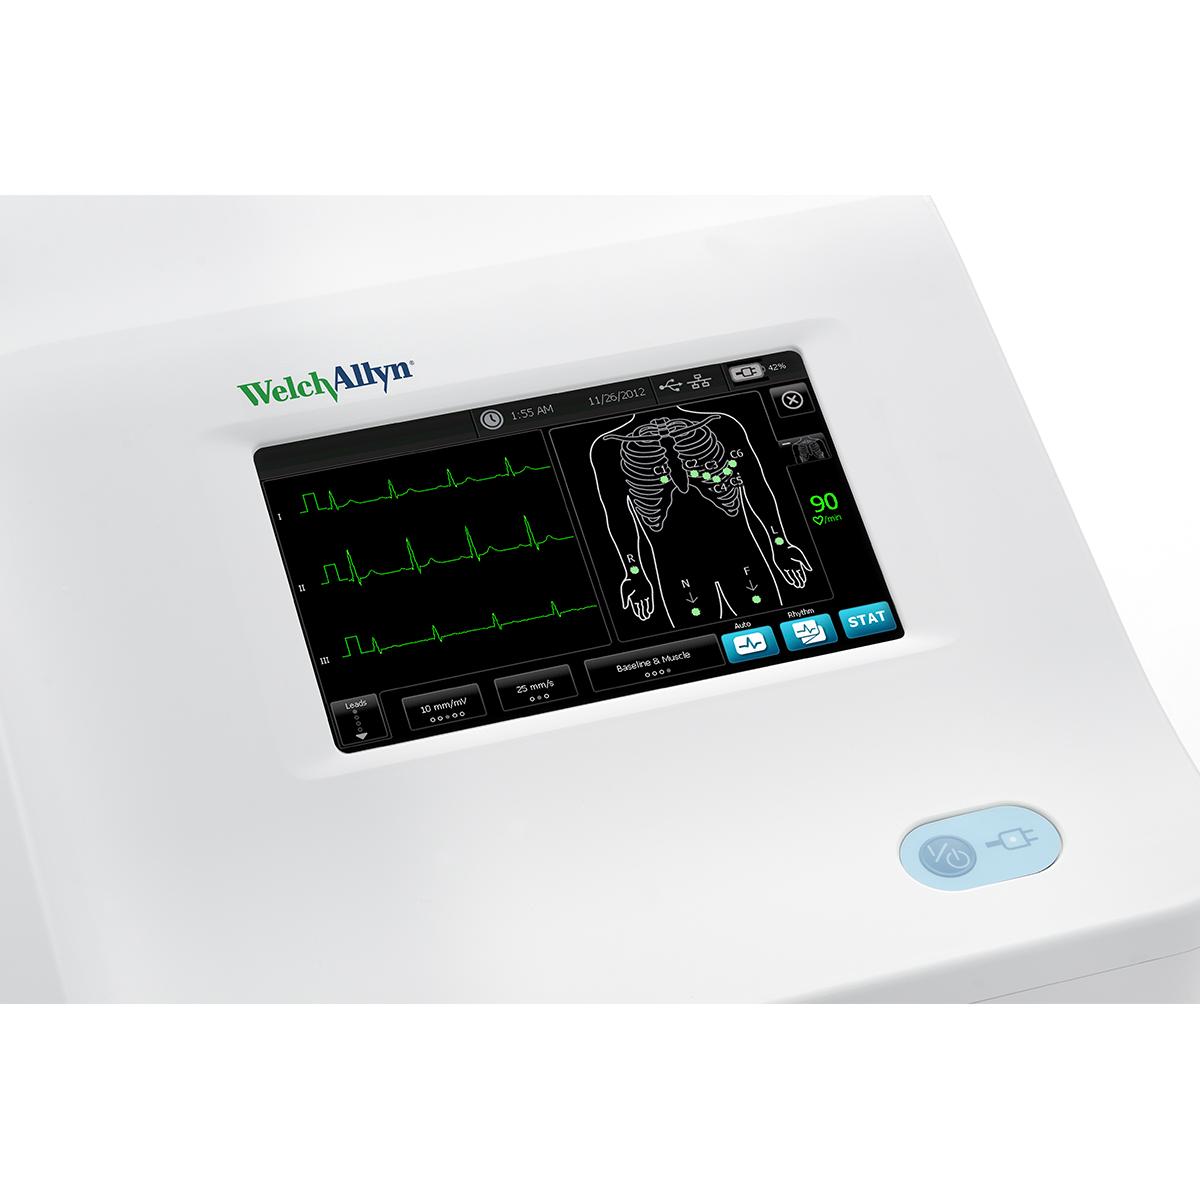 Welch Allyn CP 150-enhet för vilo-EKG, framsida, spirometer ansluten, incitamentsskärm visas